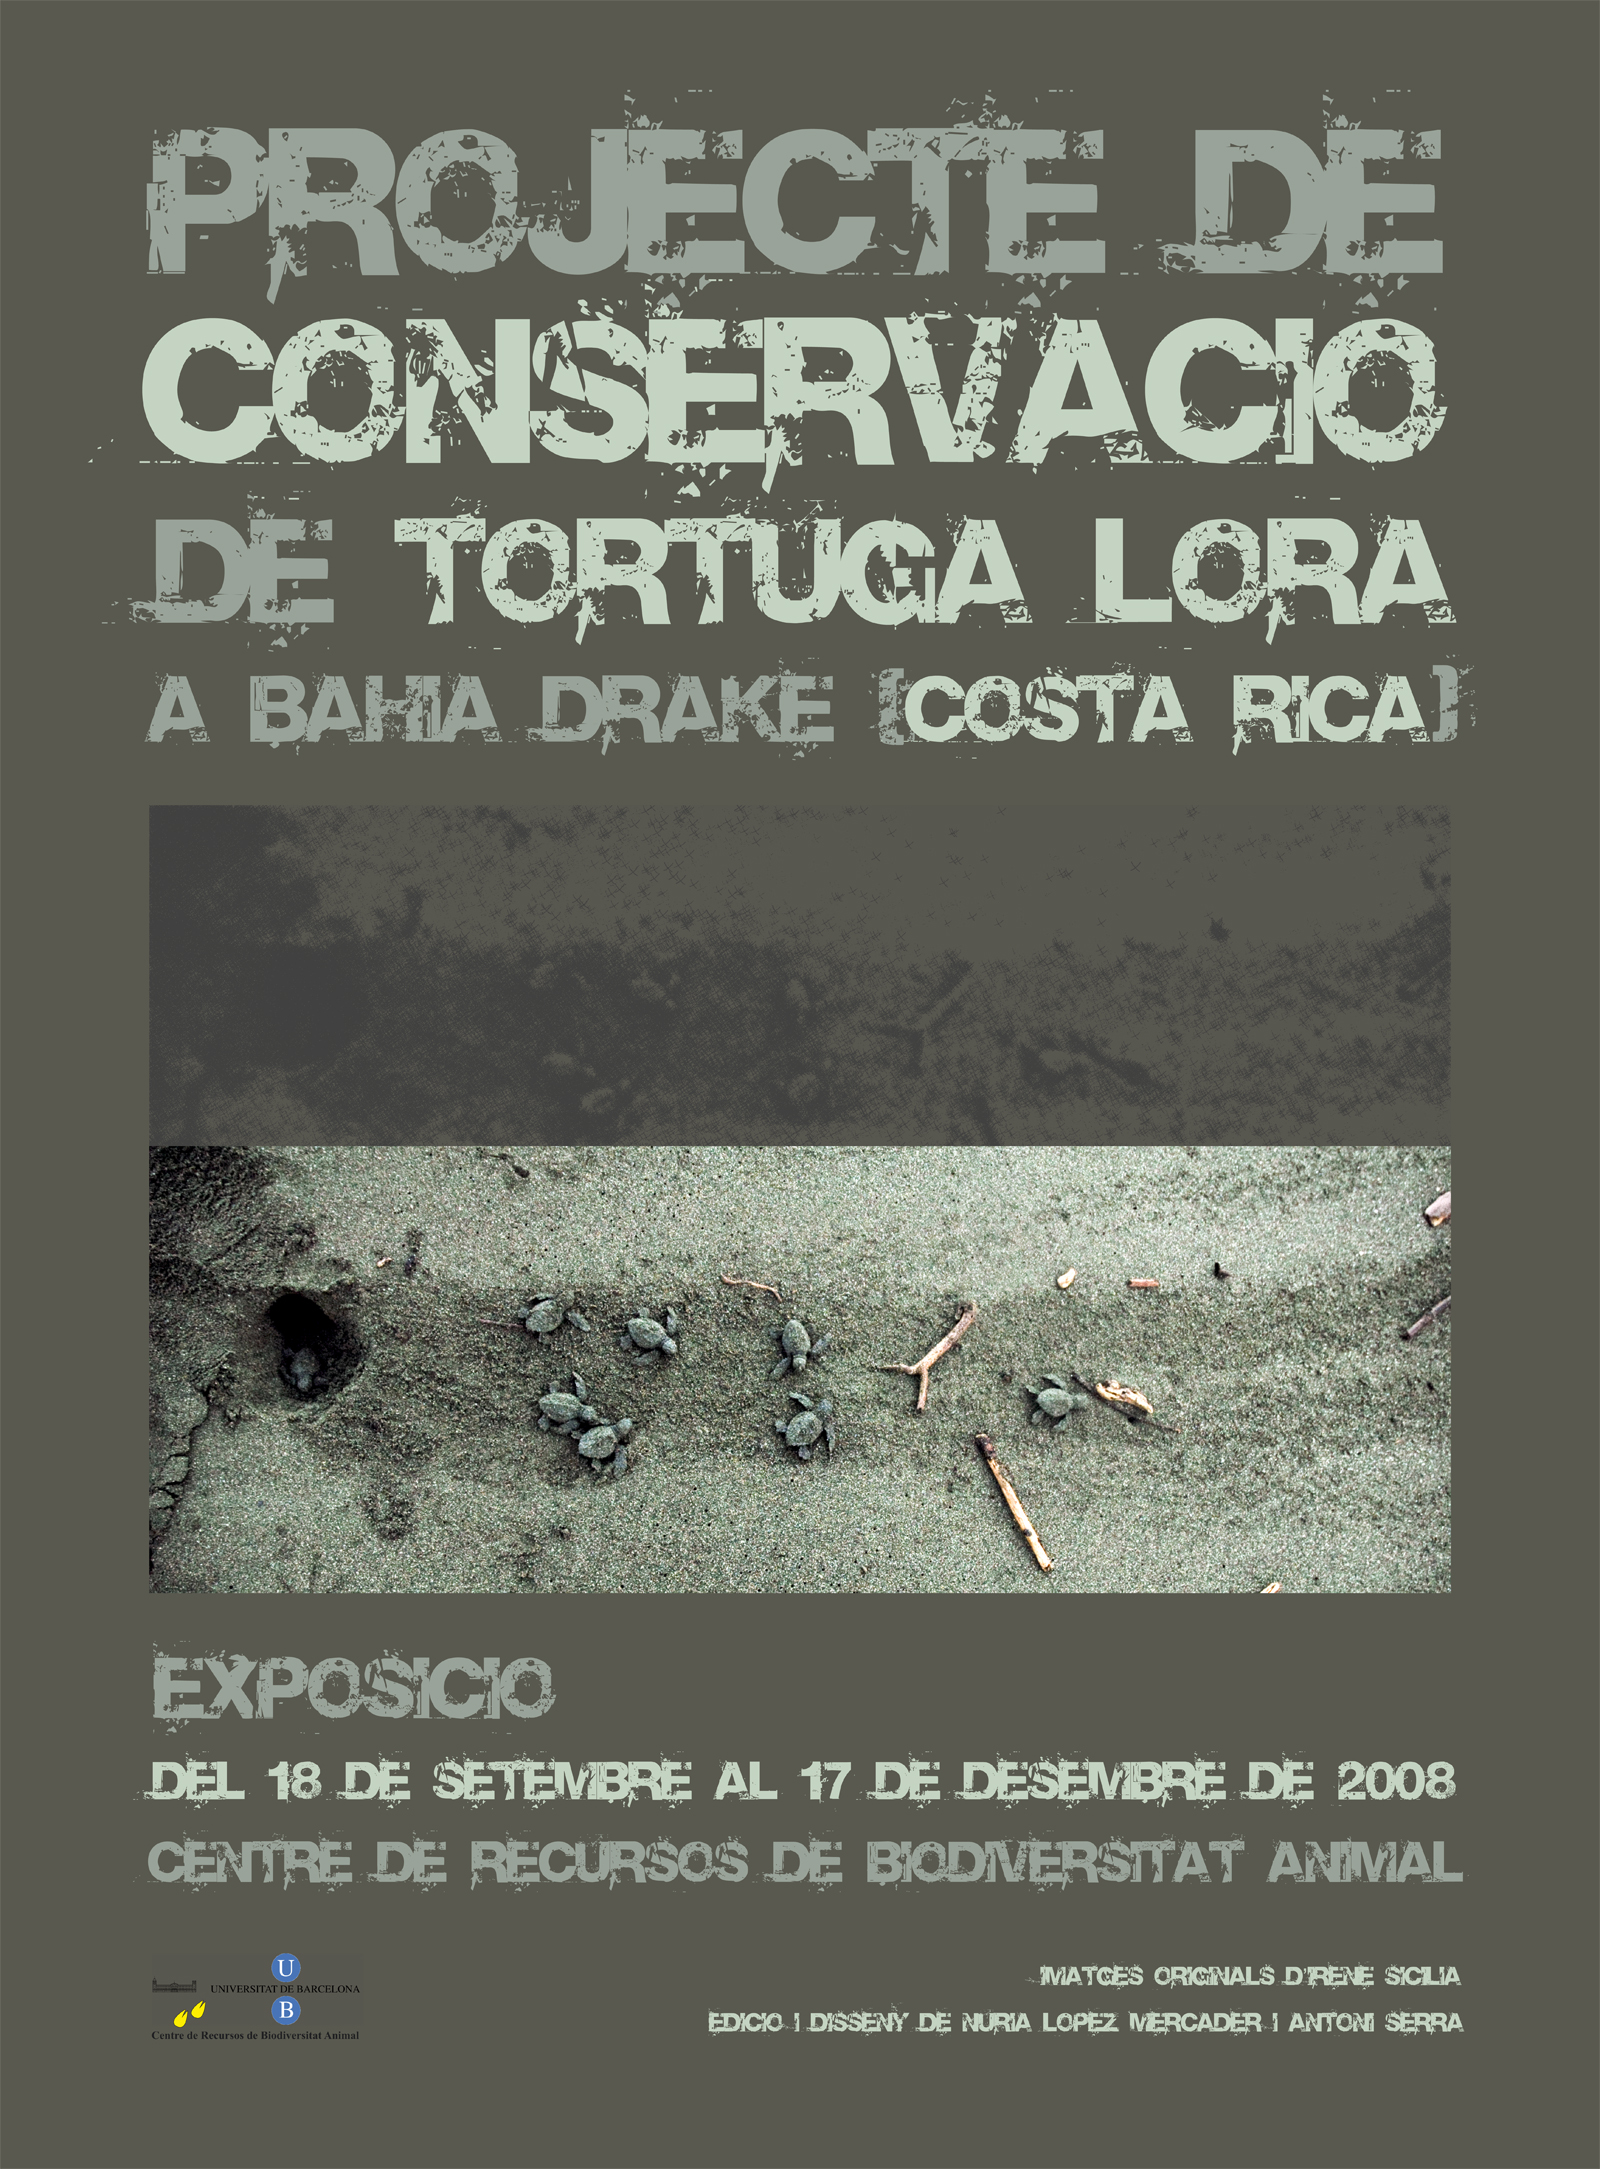 Cartell de l'exposició "Projecte de Conservació de Tortuga Lora a Bahía Drake (Costa Rica)", amb fotografies d'Irene Sicilia